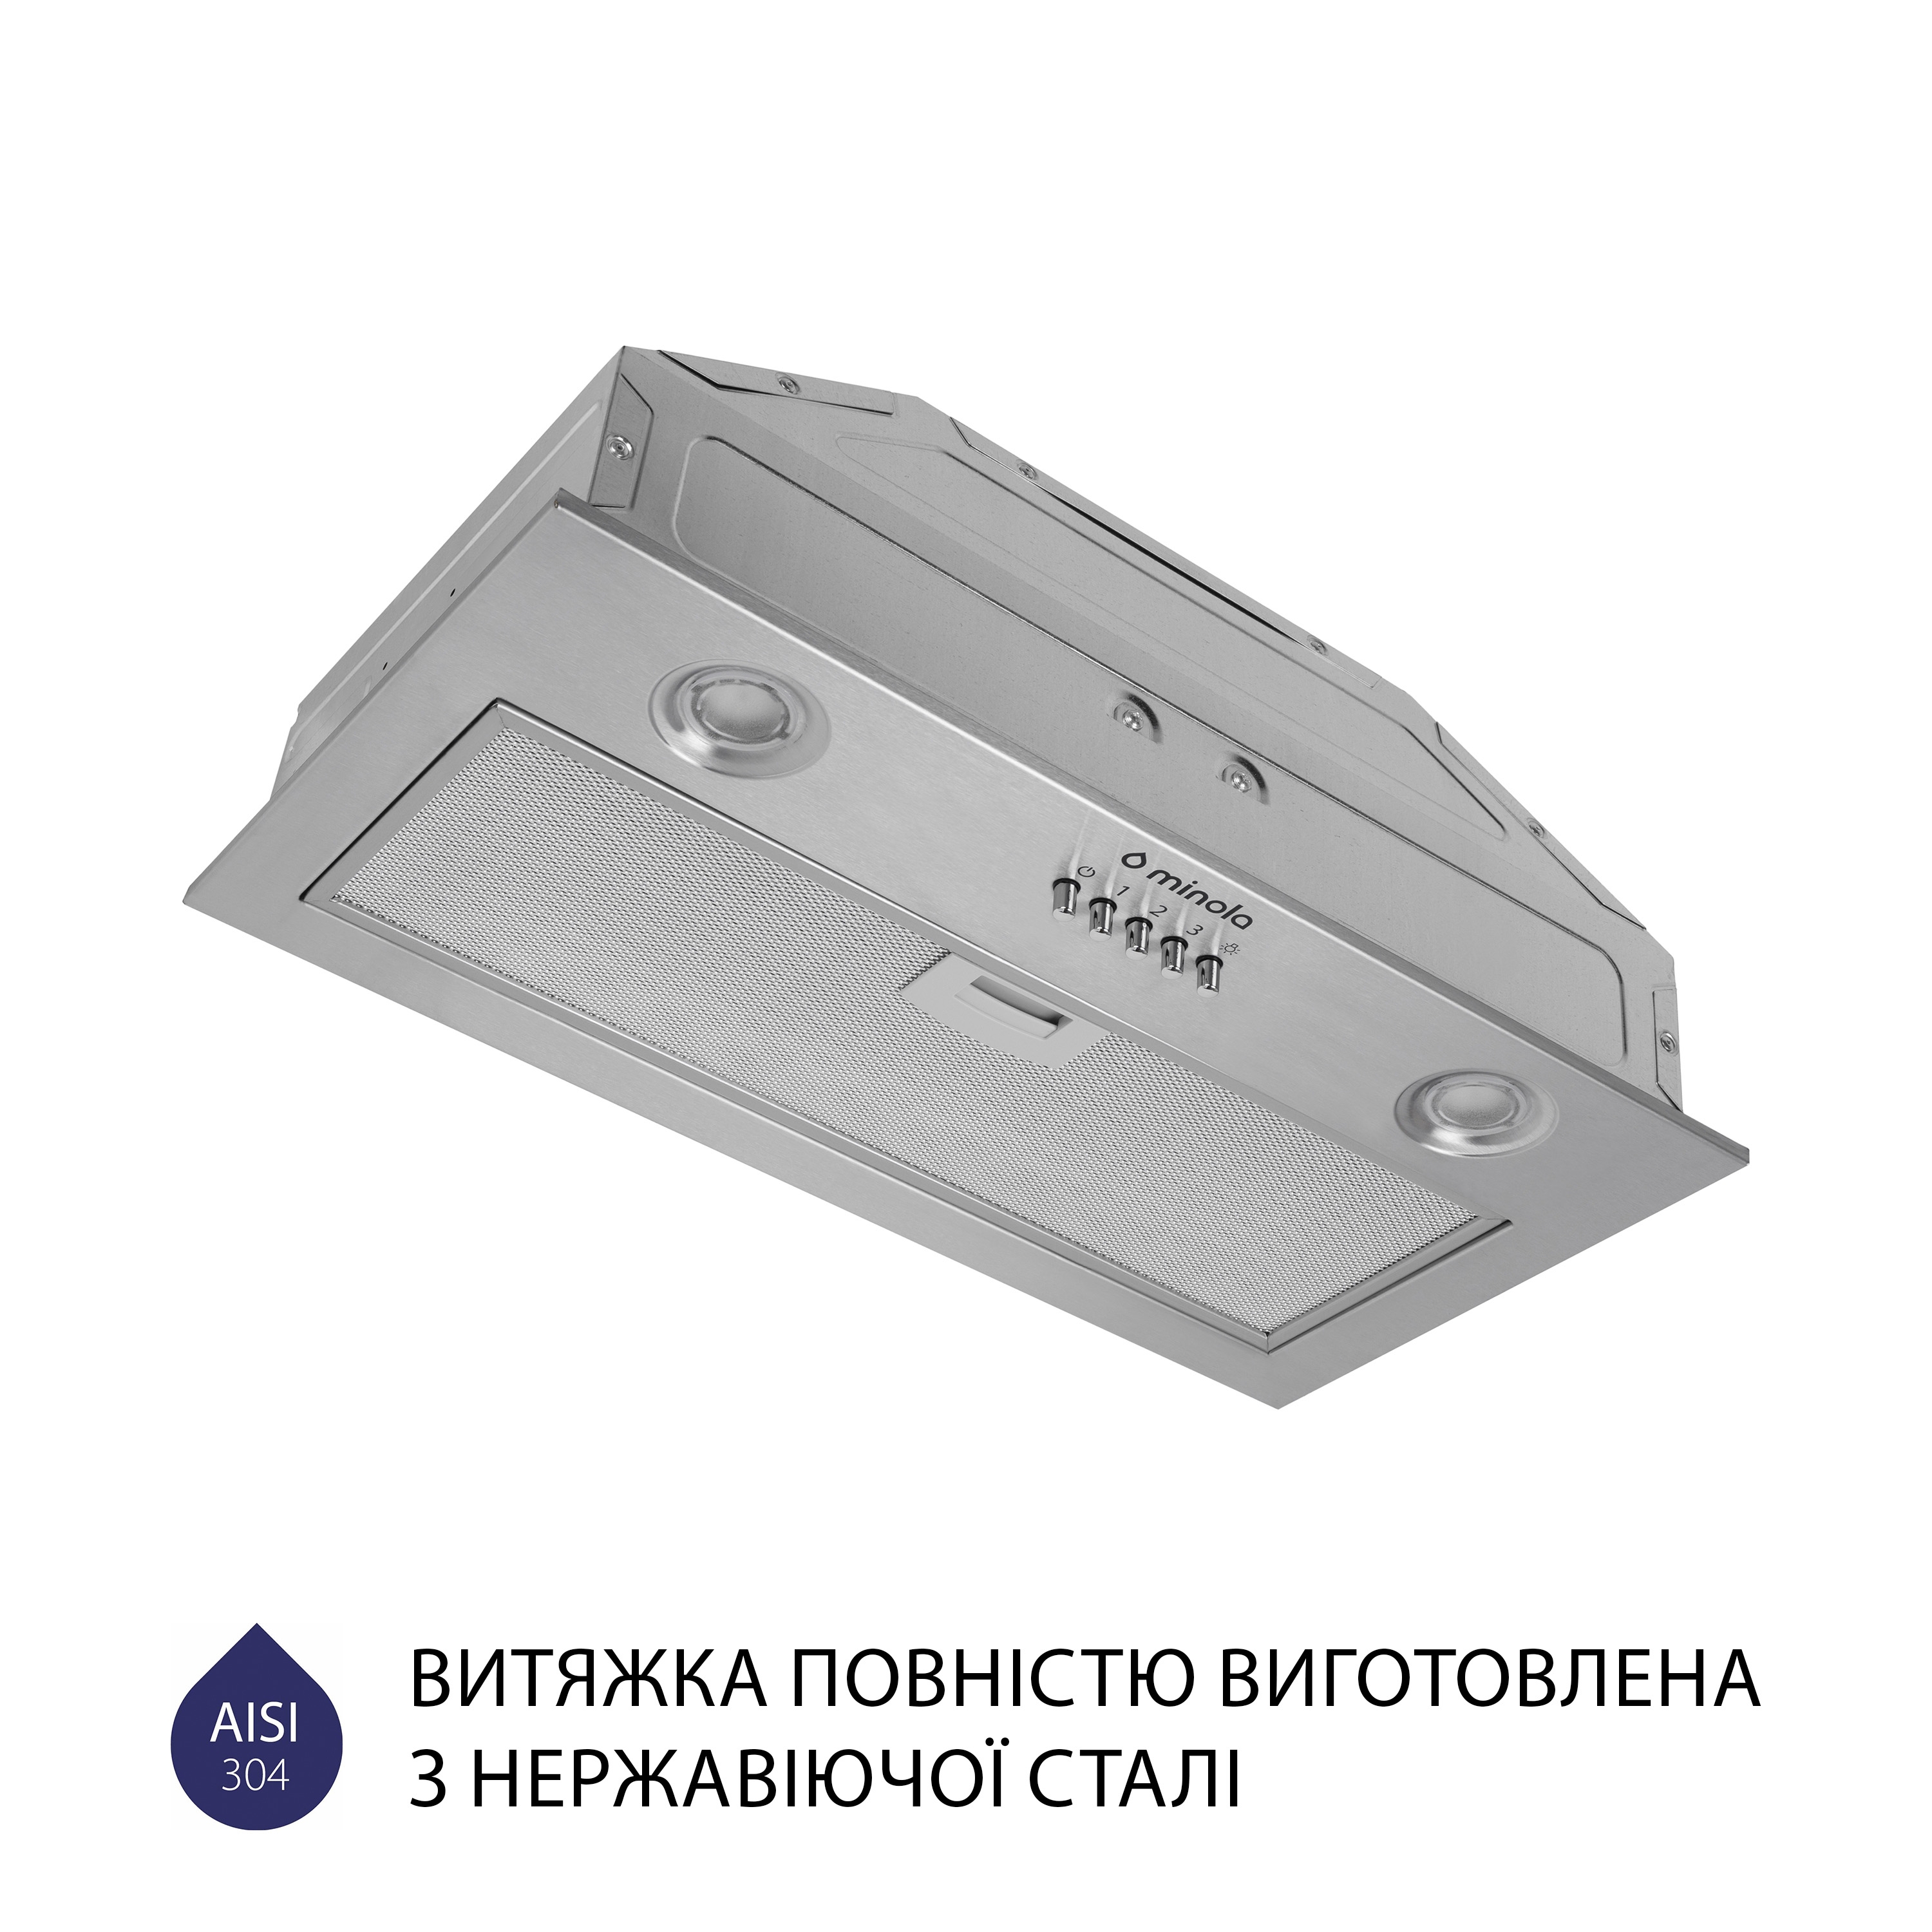 продаём Minola HBI 5204 I 700 LED в Украине - фото 4